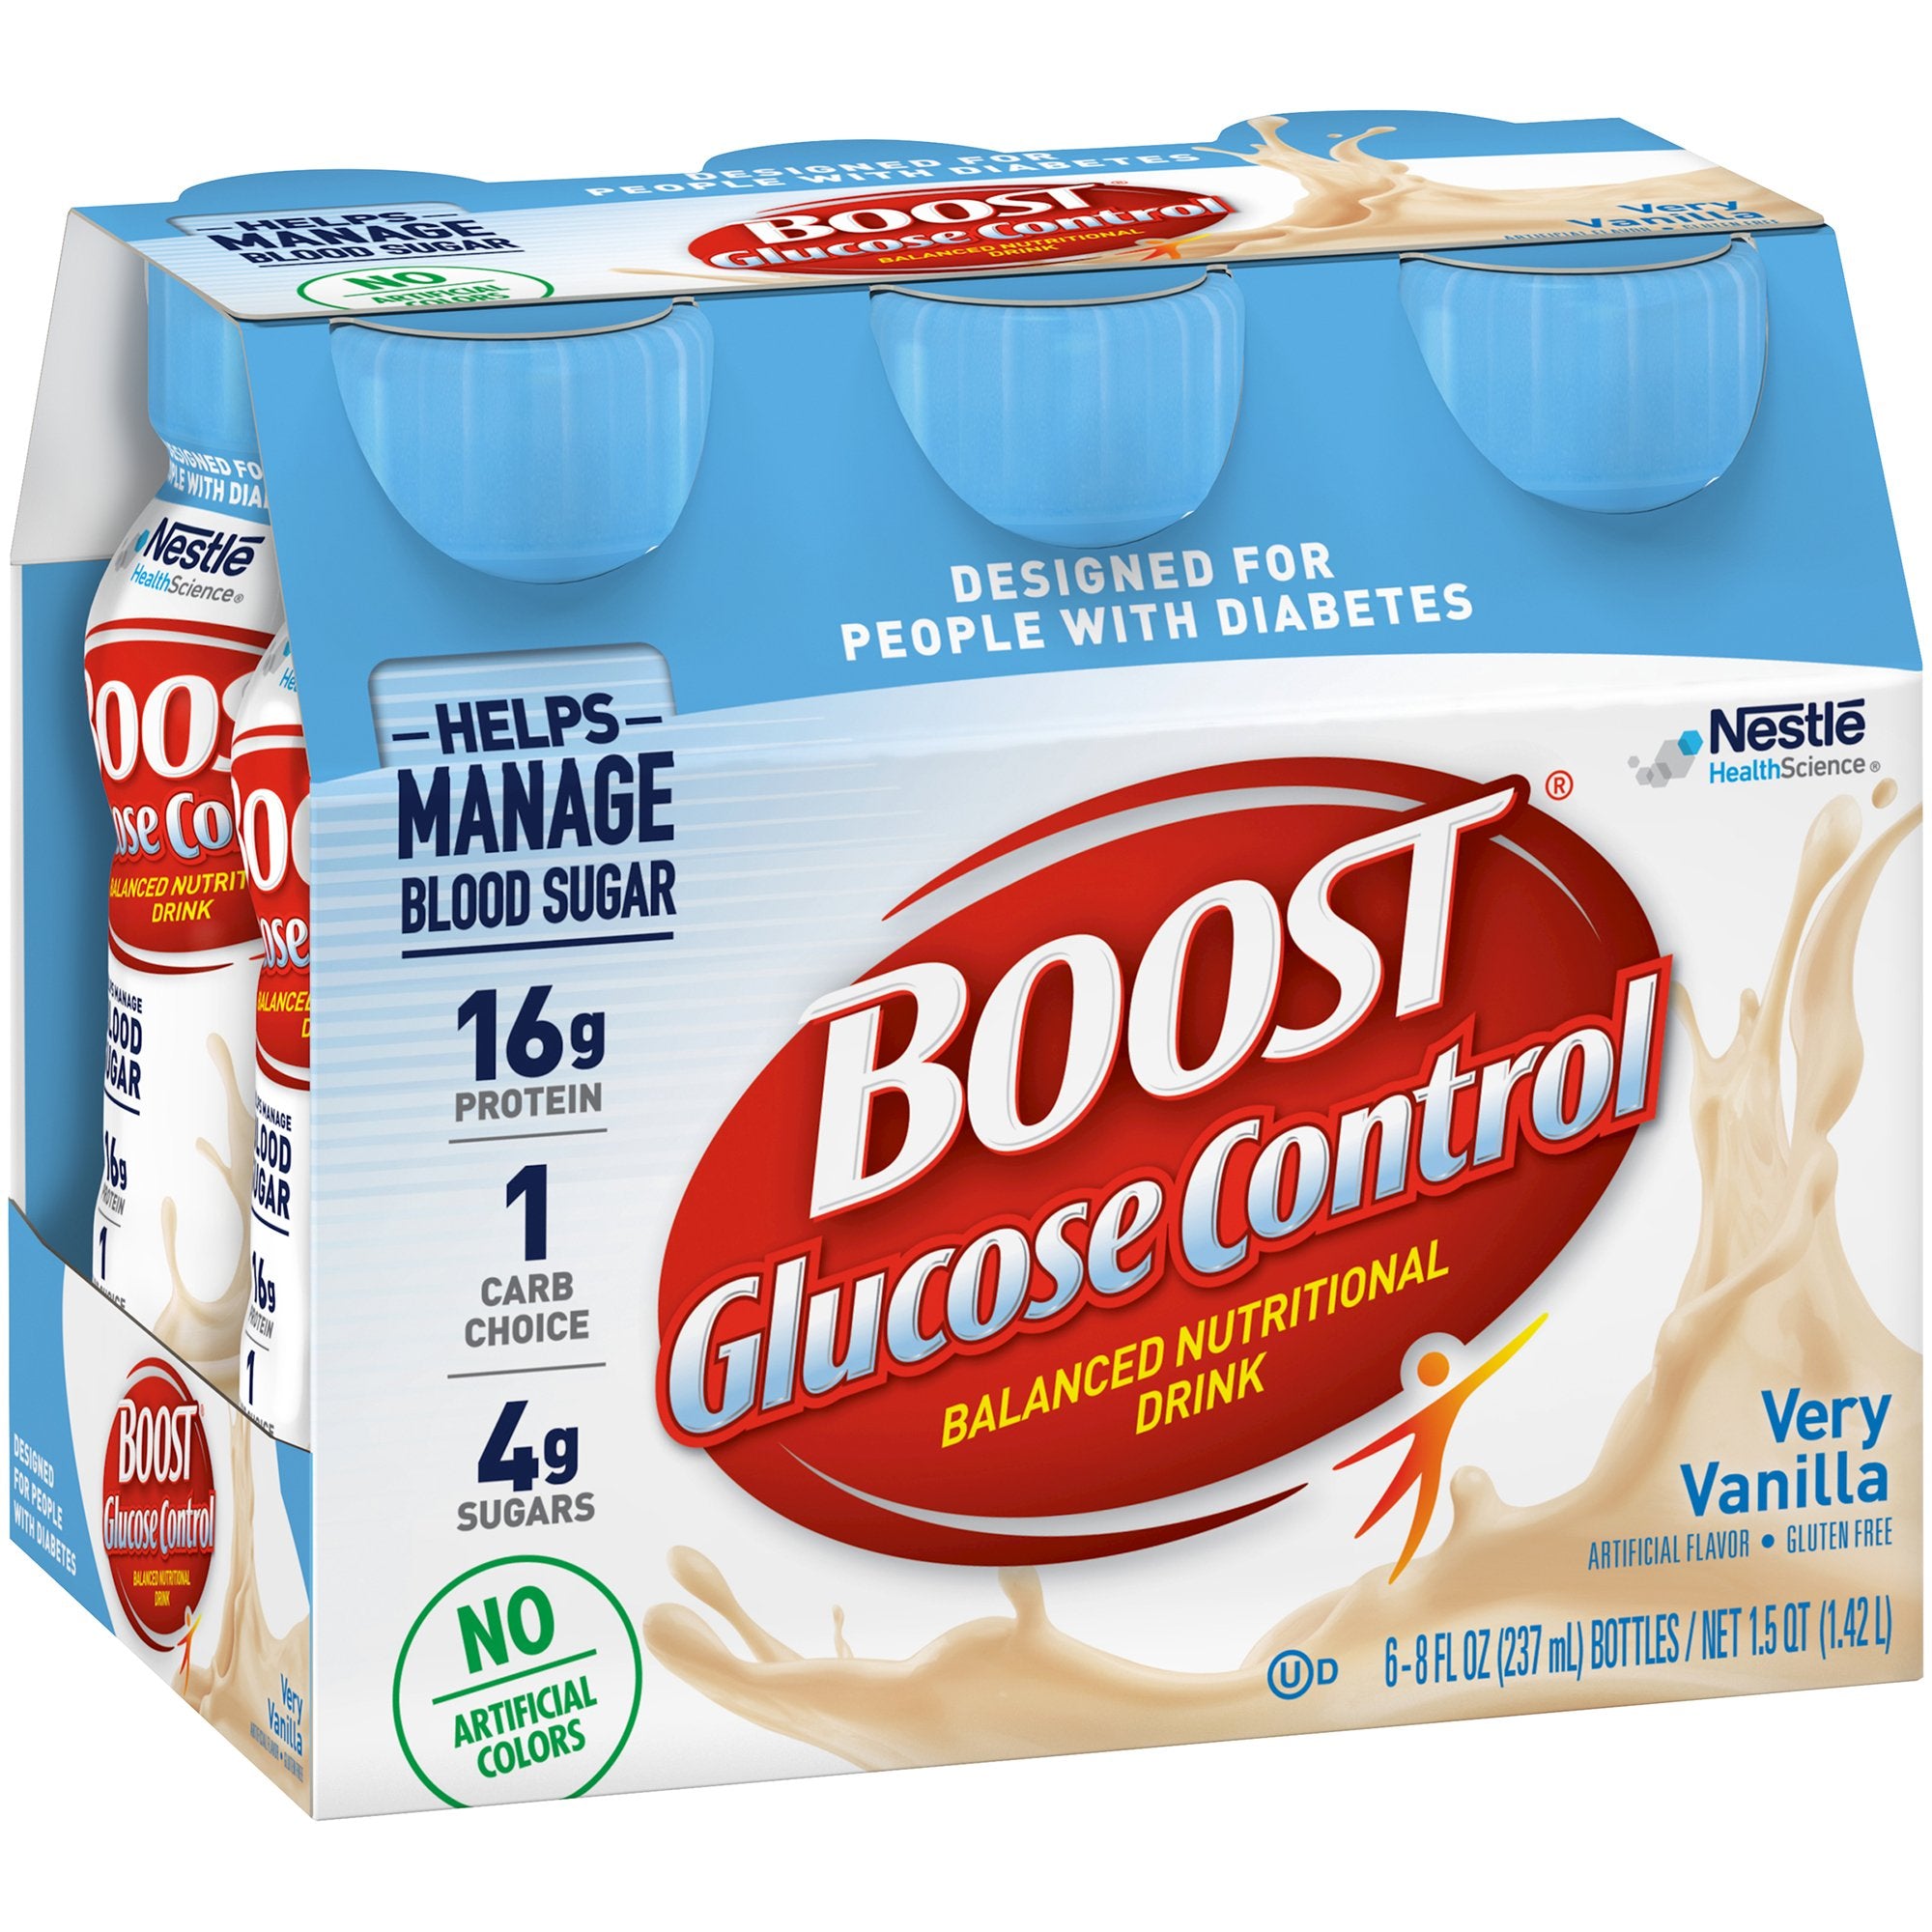 Oral Supplement Boost Glucose Control Very Vanilla Flavor Liquid 8 oz. Bottle